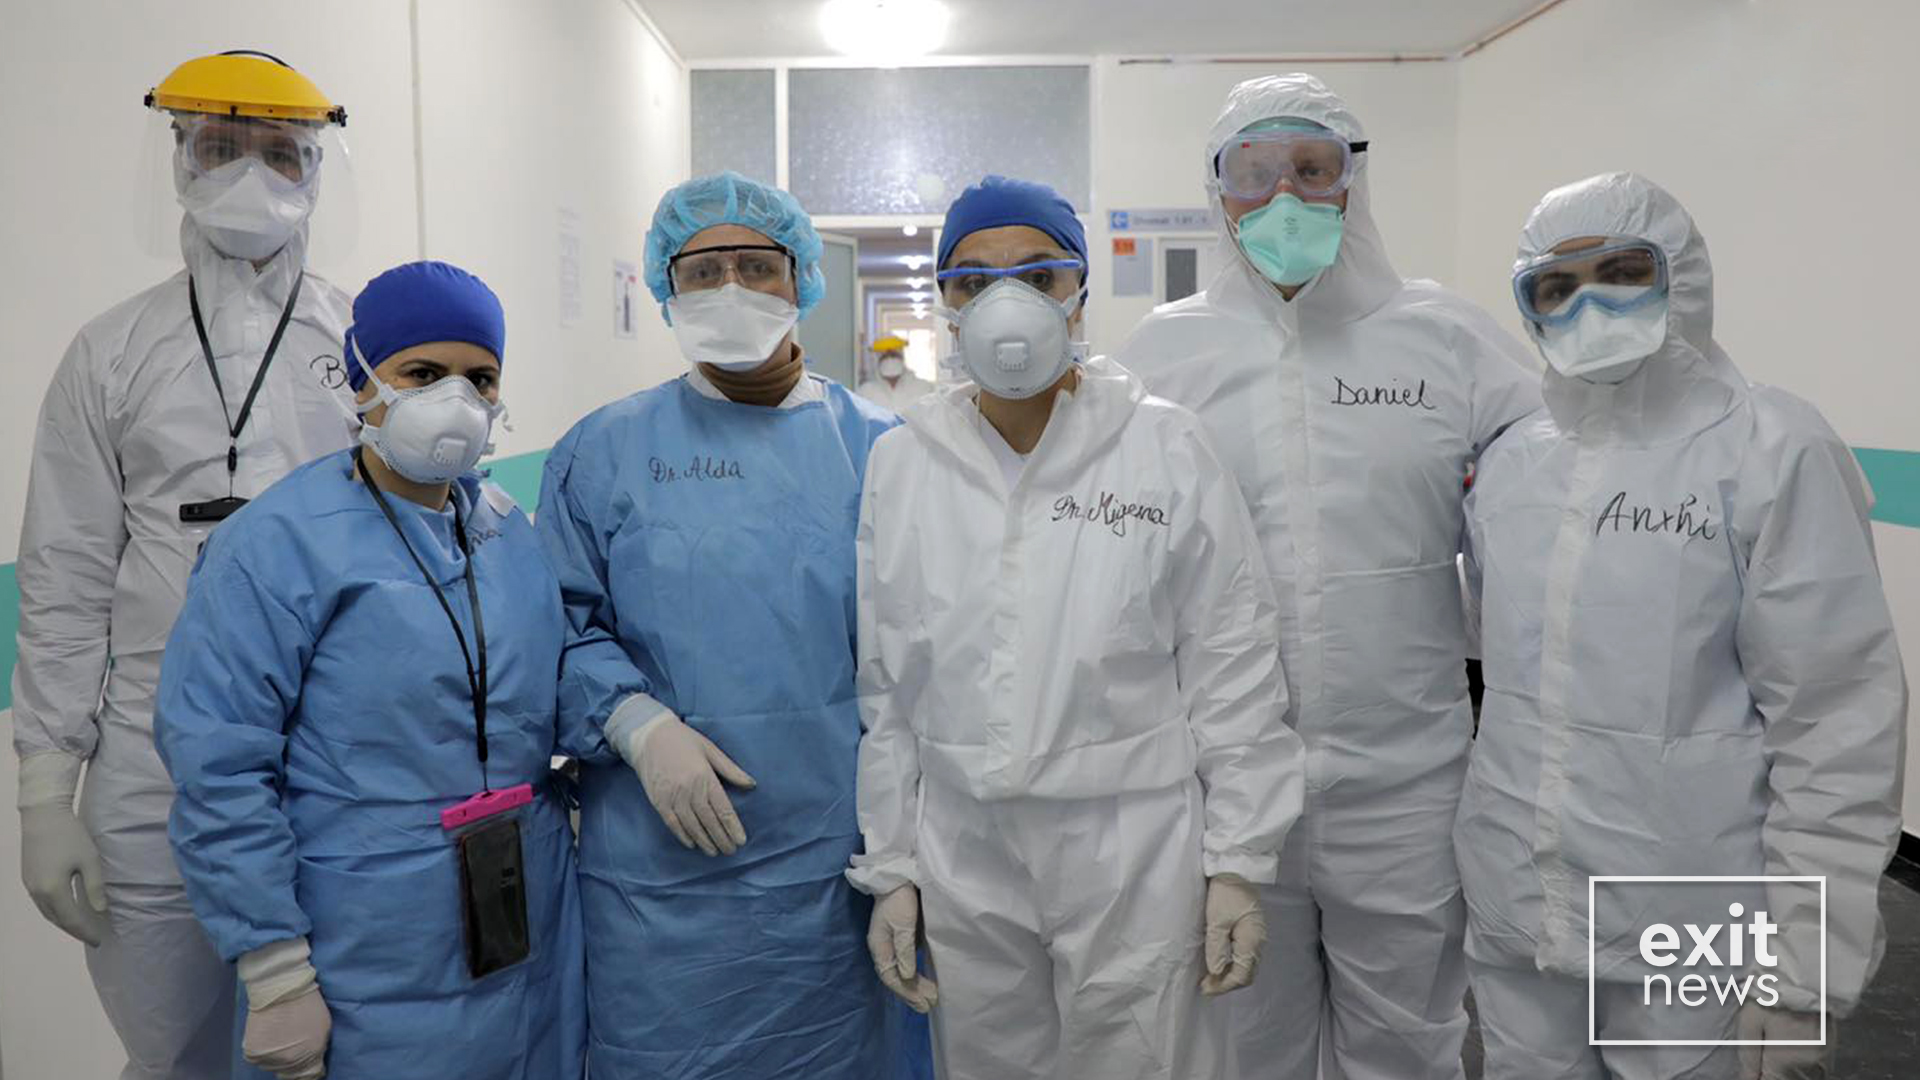 Janë shëruar 45% e pacientëve me Covid-19 në Shqipëri